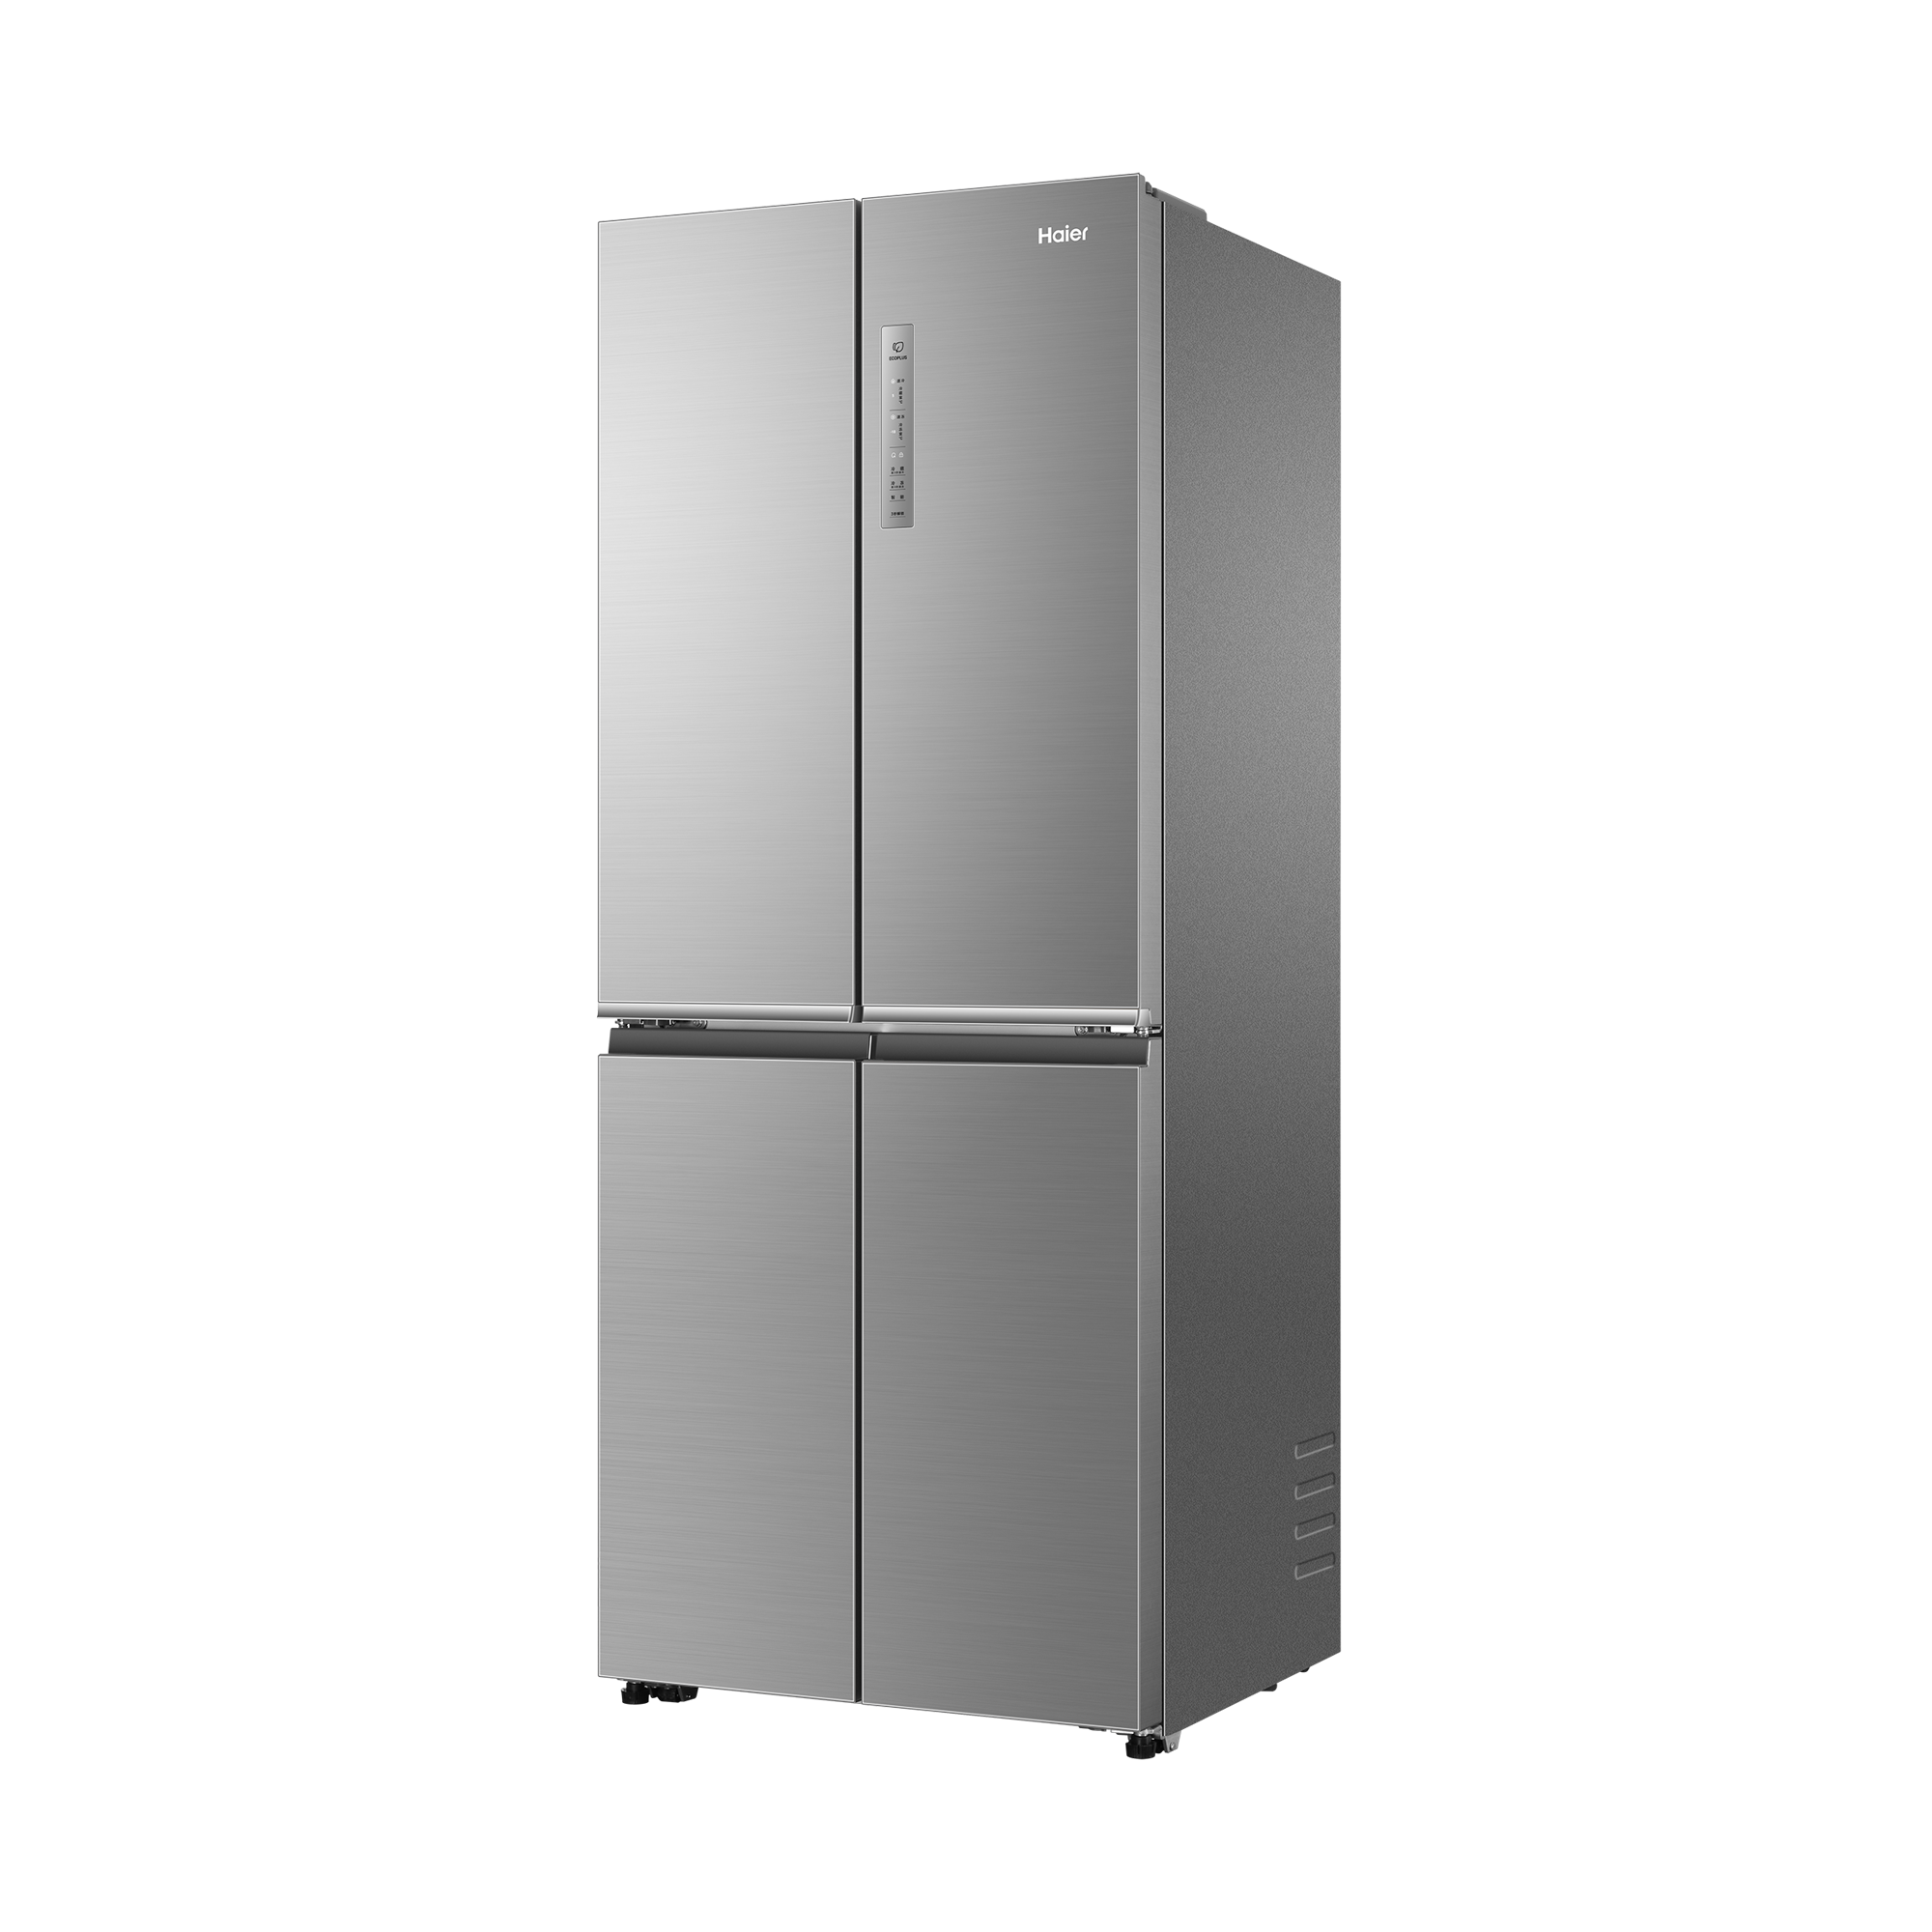 【美的BCD-176M】美的冰箱,BCD-176M,官方报价_规格_参数_图片-美的商城